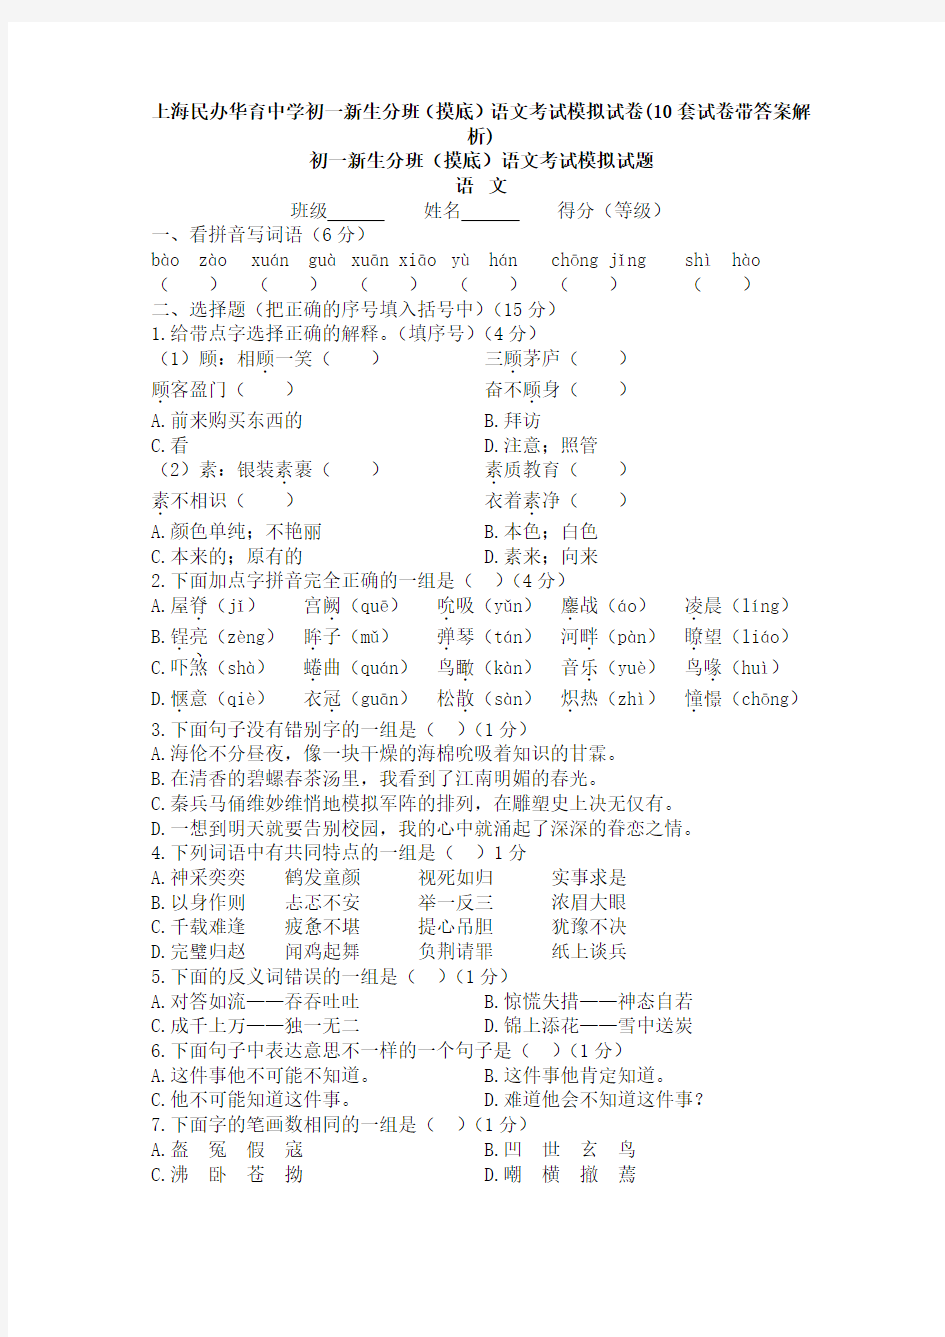 上海民办华育中学初一新生分班(摸底)语文考试模拟试卷(10套试卷带答案解析)